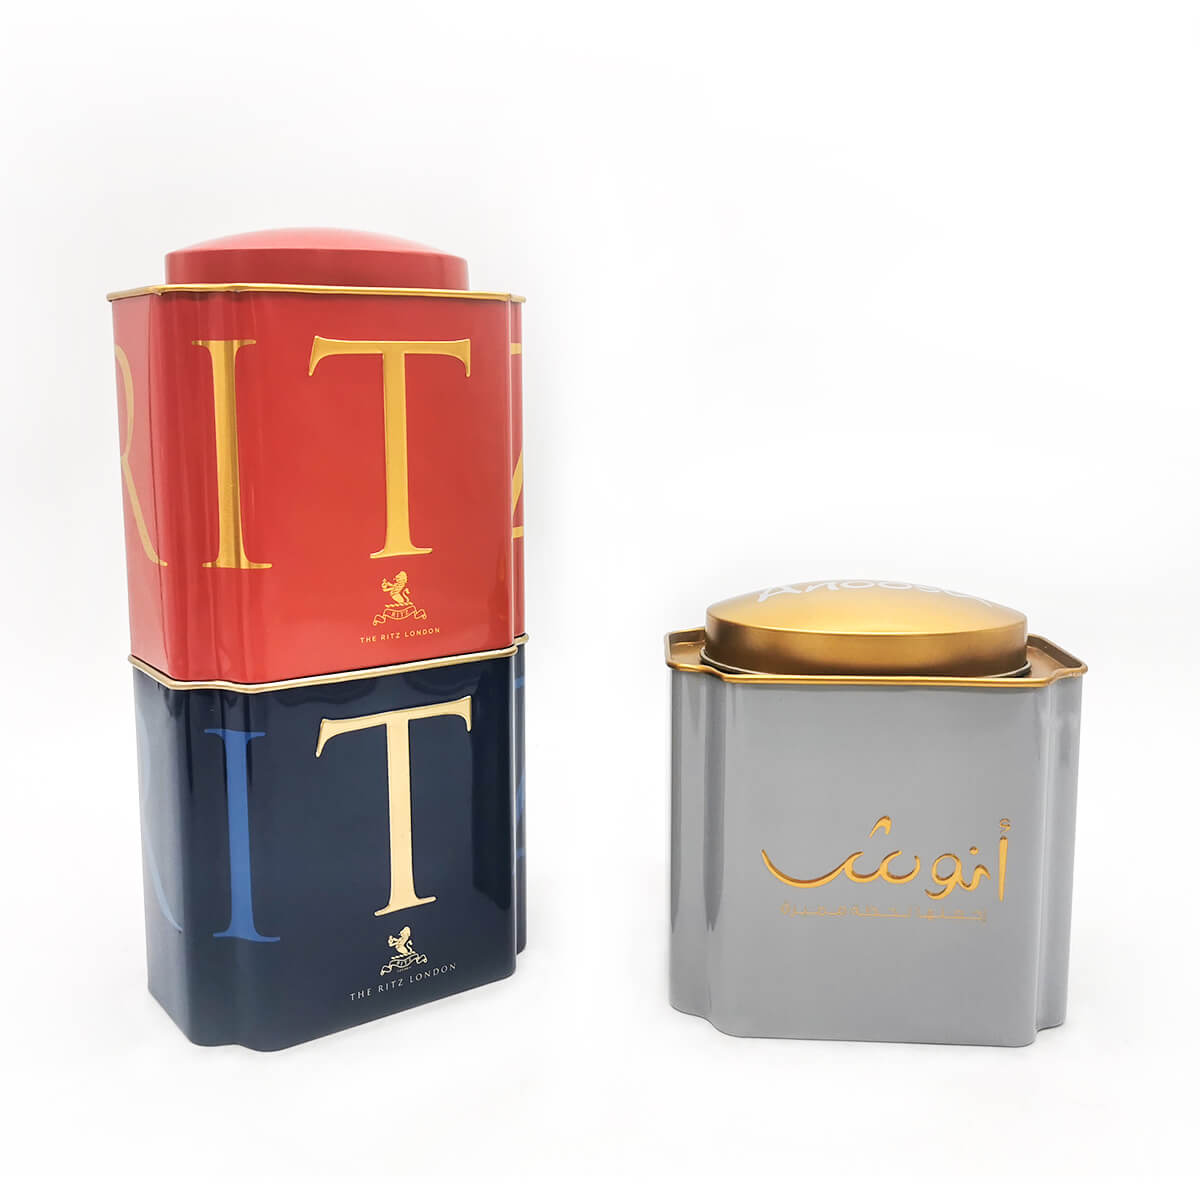 Neue Metall-Geschenk-Tee-Blechdose | Geschenk-Blechdose mit Tee